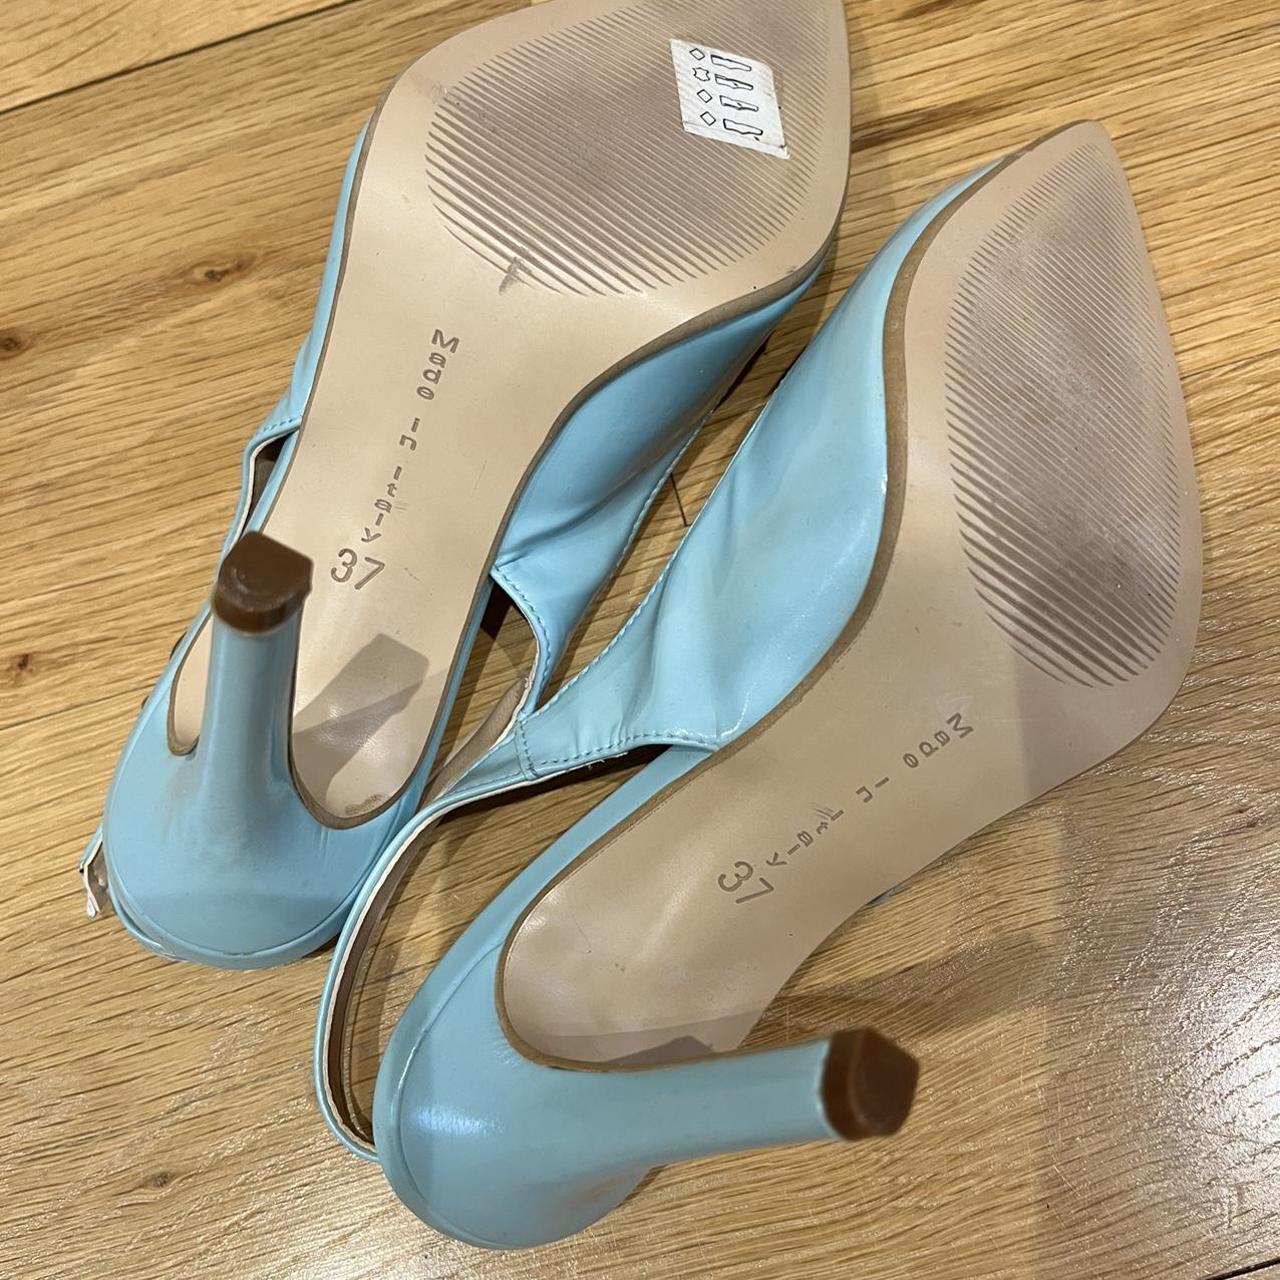 Turquoise blue sling back heels. Never worn -... - Depop